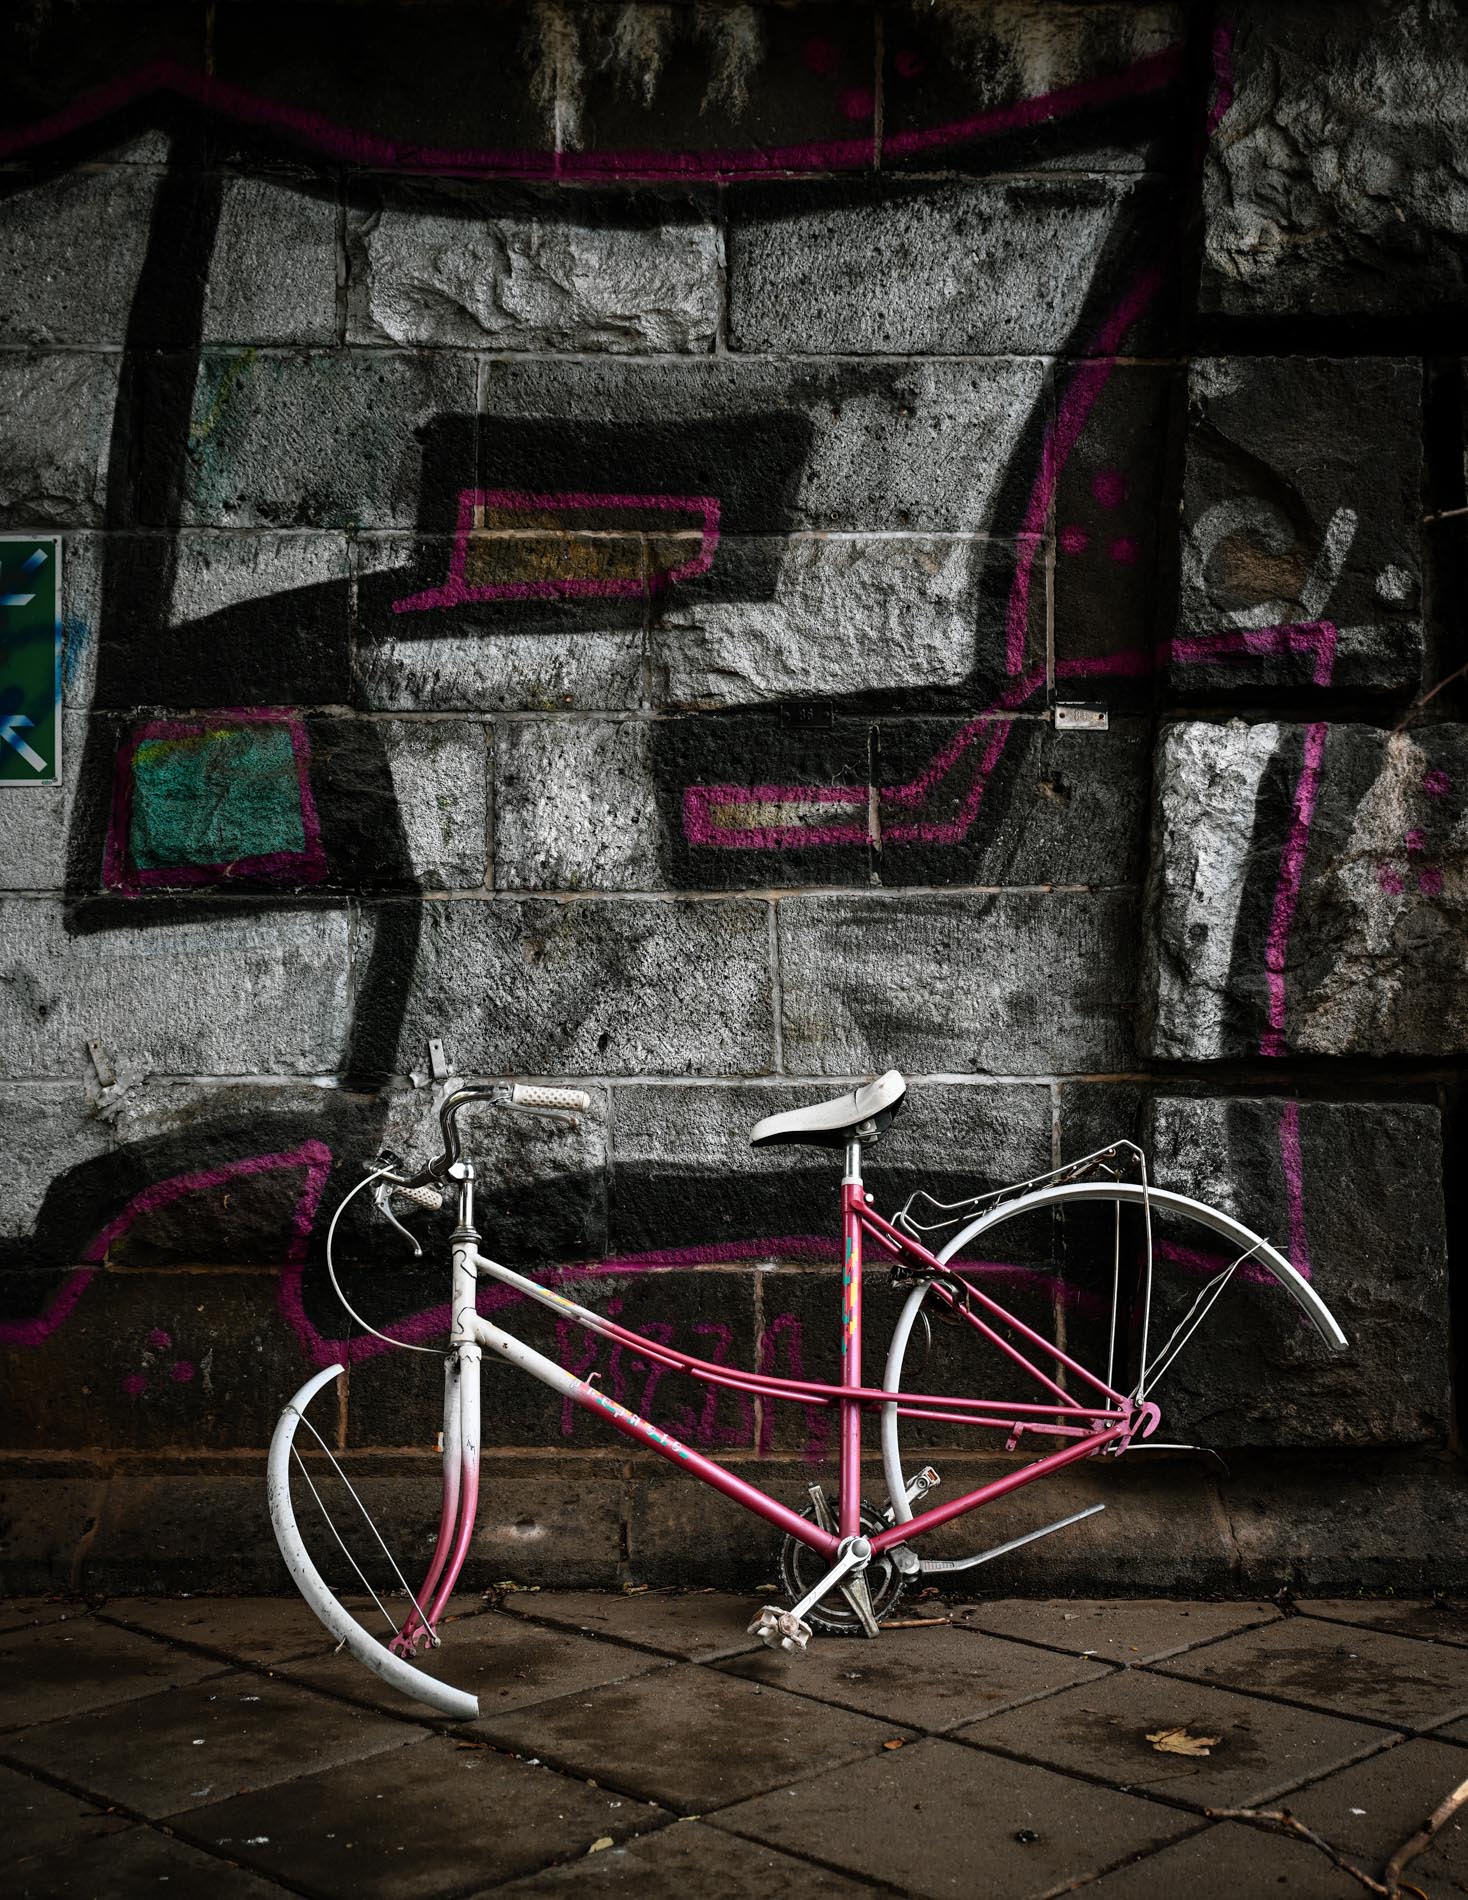 geplünderter Fahrradrahmen vor einer symbolischen Graffiti-Wand mit einer großen gesprayten 2